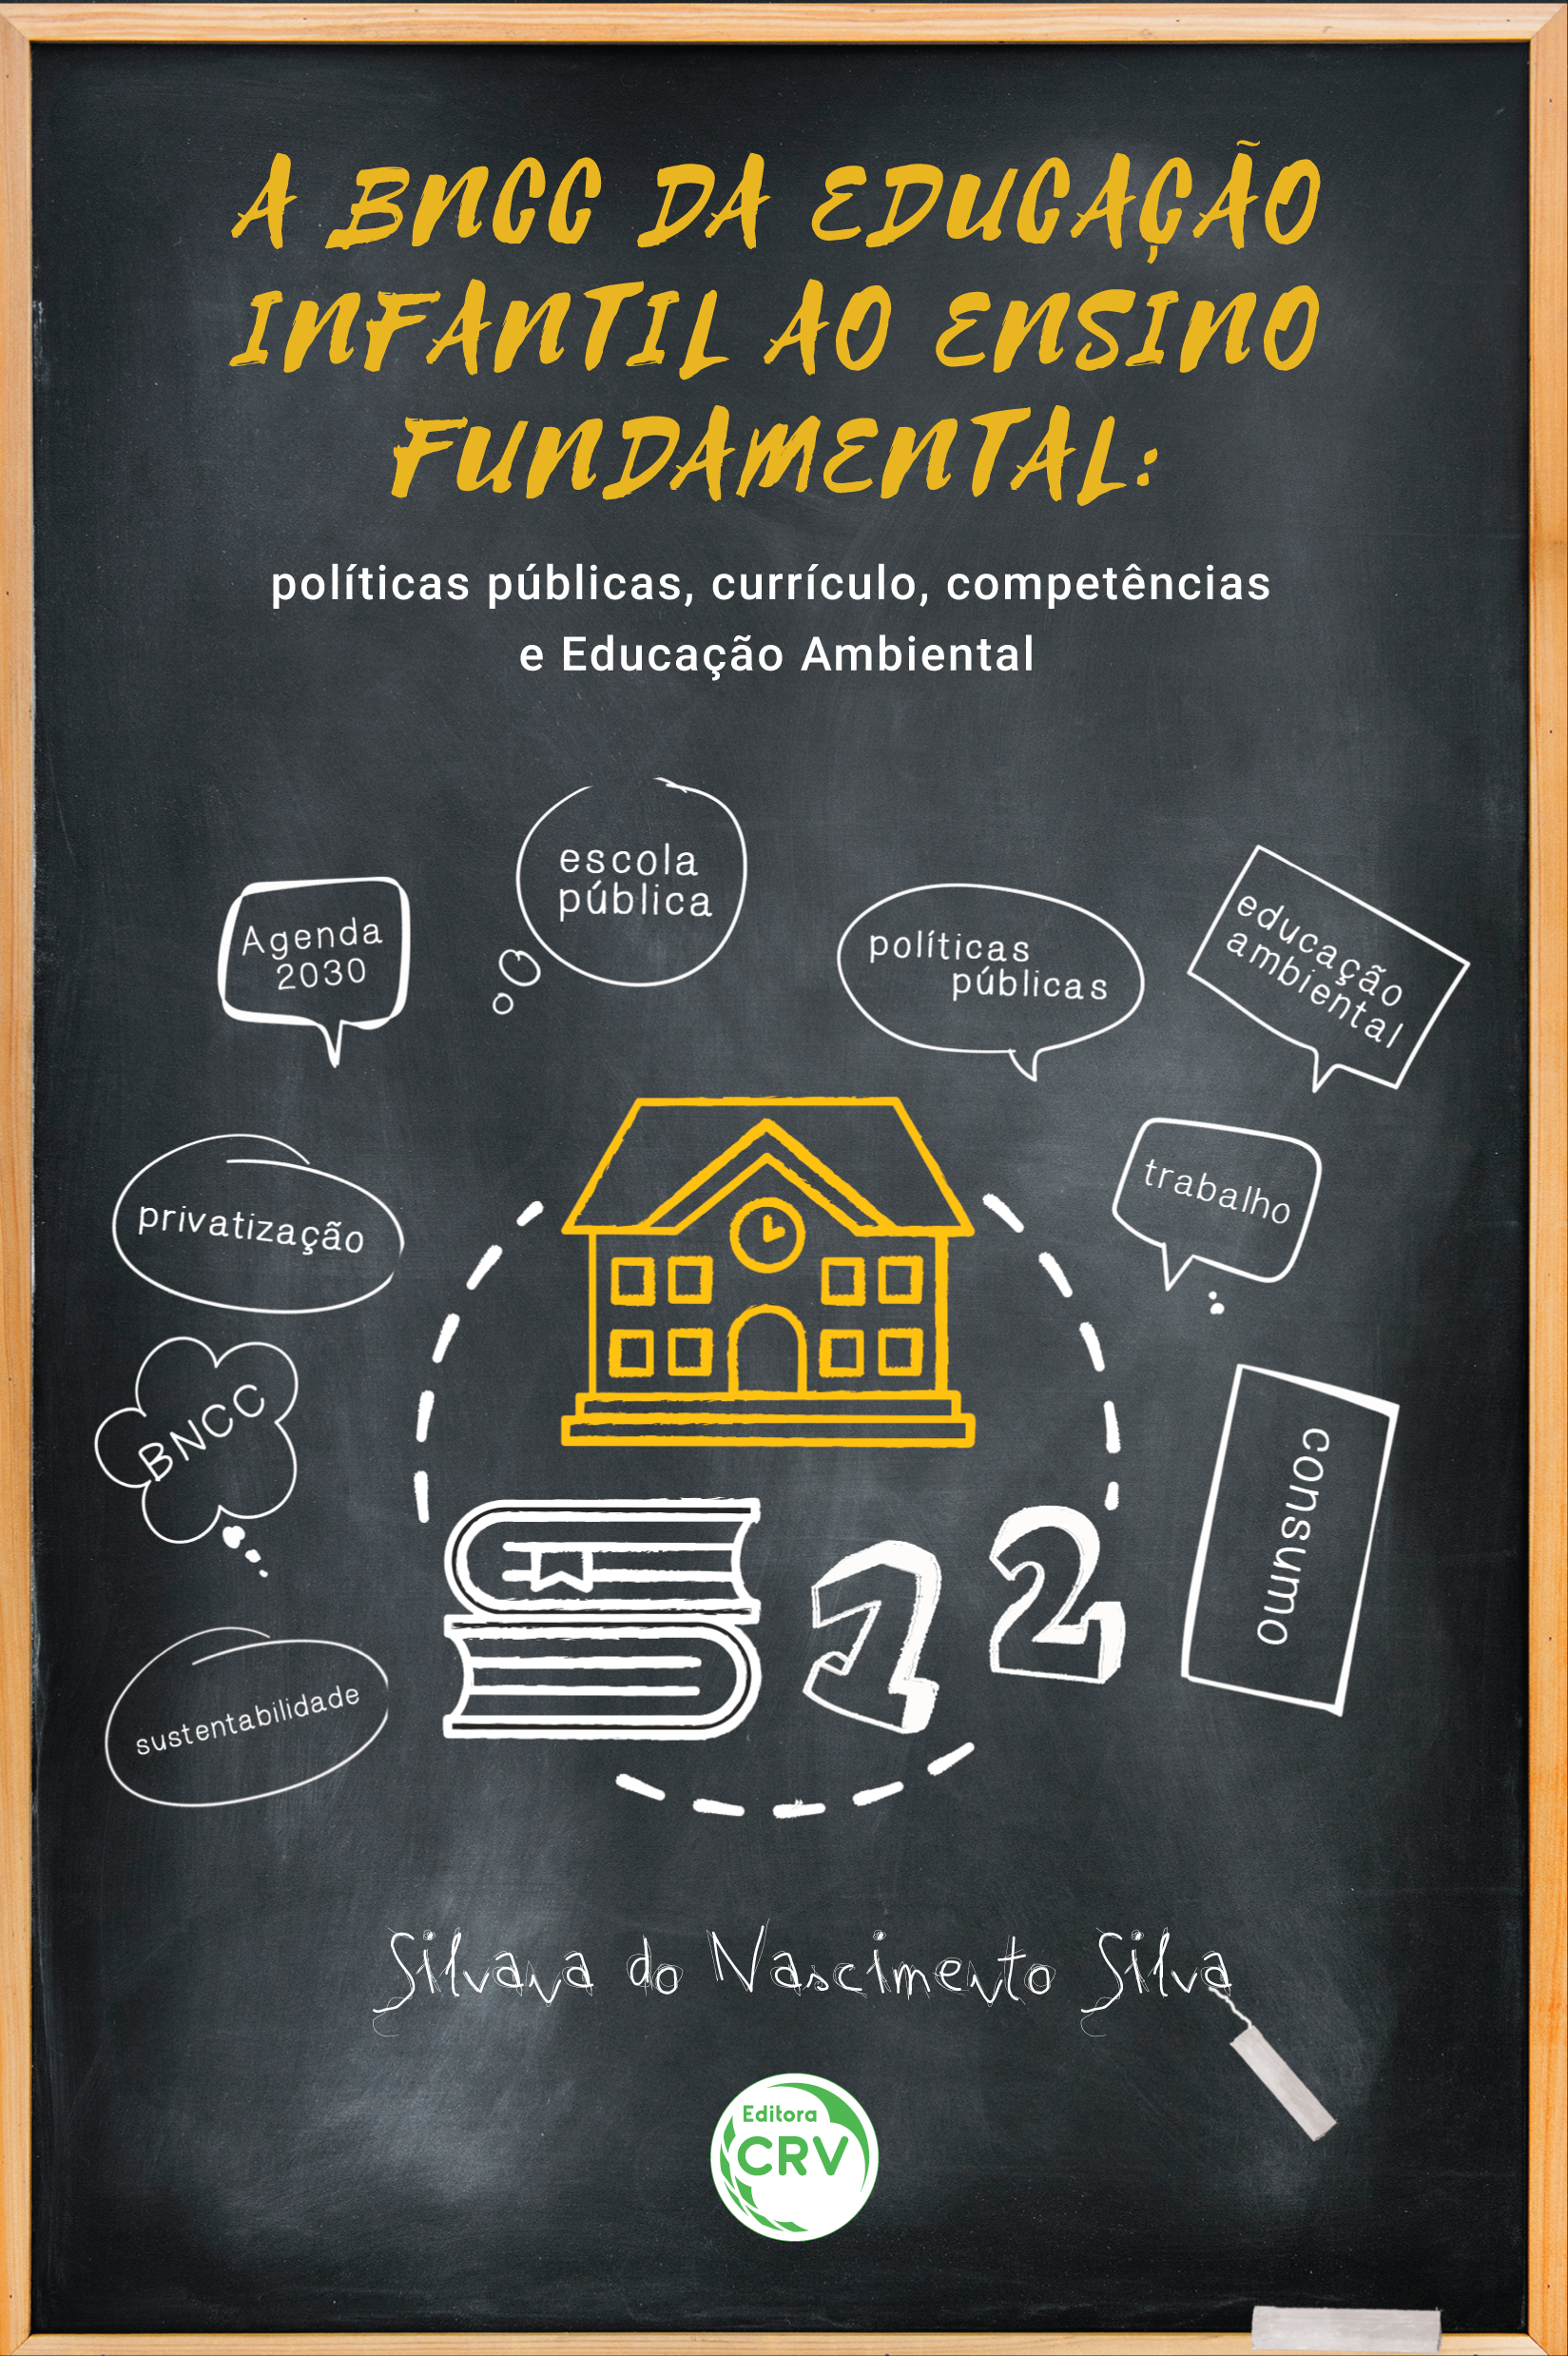 Capa do livro: A BNCC DA EDUCAÇÃO INFANTIL AO ENSINO FUNDAMENTAL:  <br>políticas públicas, currículo, competências e Educação Ambiental